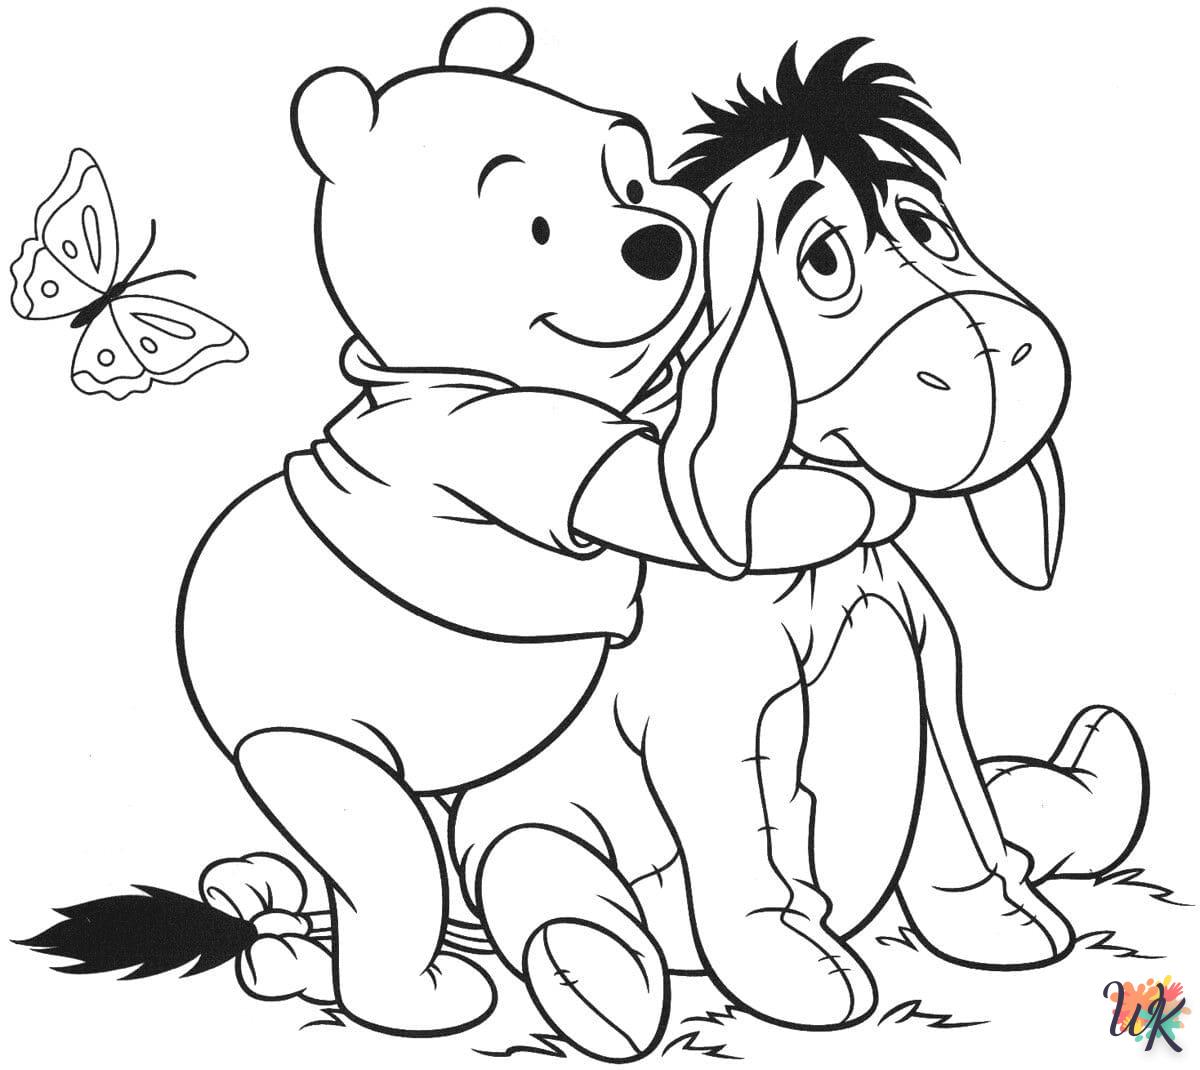 Disegni da Colorare Winnie the Pooh 92